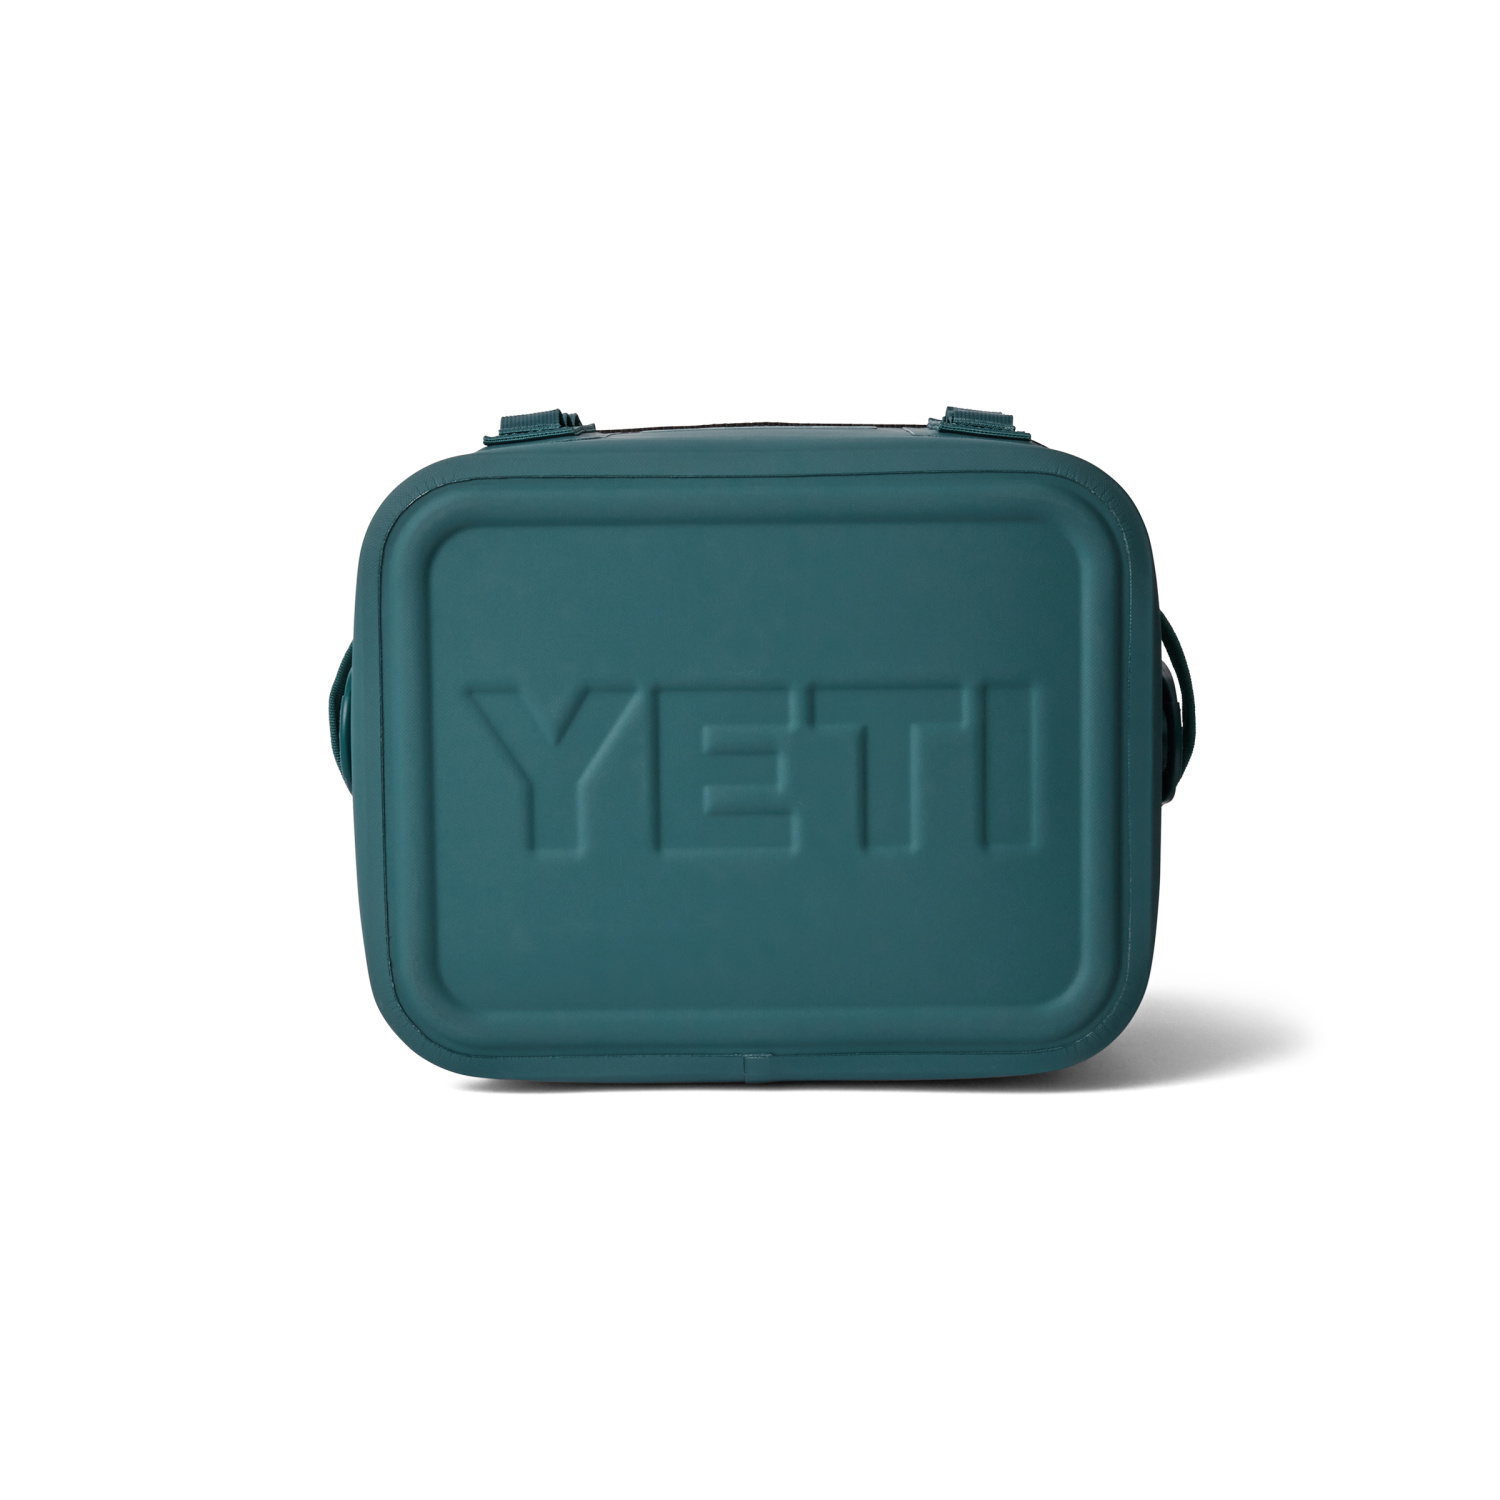 Yeti Hopper Flip 12 Soft Cooler - Agave Teal